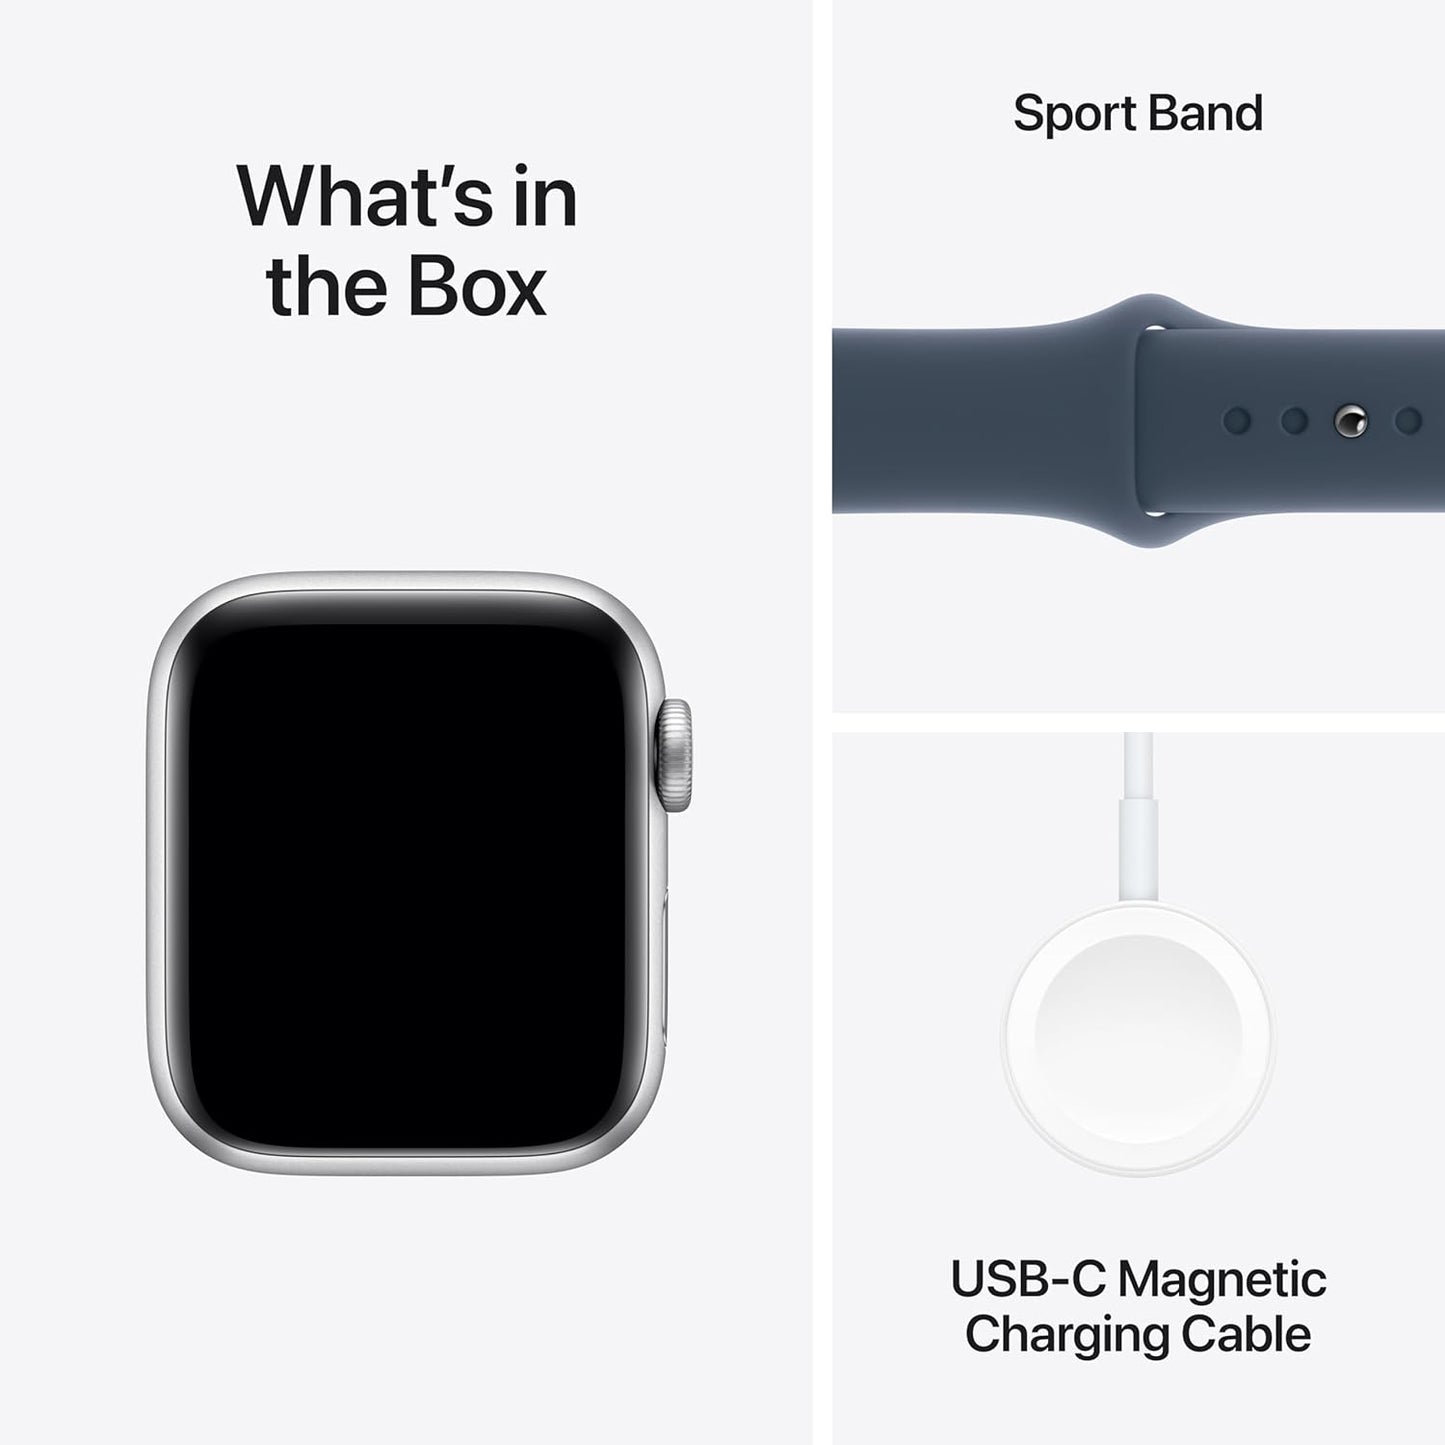 Apple Watch SE (الجيل الثاني) [GPS + Cellular 40mm] ساعة ذكية مع هيكل من الألومنيوم الفضي وحزام رياضي باللون الأزرق العاصف S/M. جهاز تتبع اللياقة البدنية والنوم، واكتشاف الأعطال، ومراقبة معدل ضربات القلب 